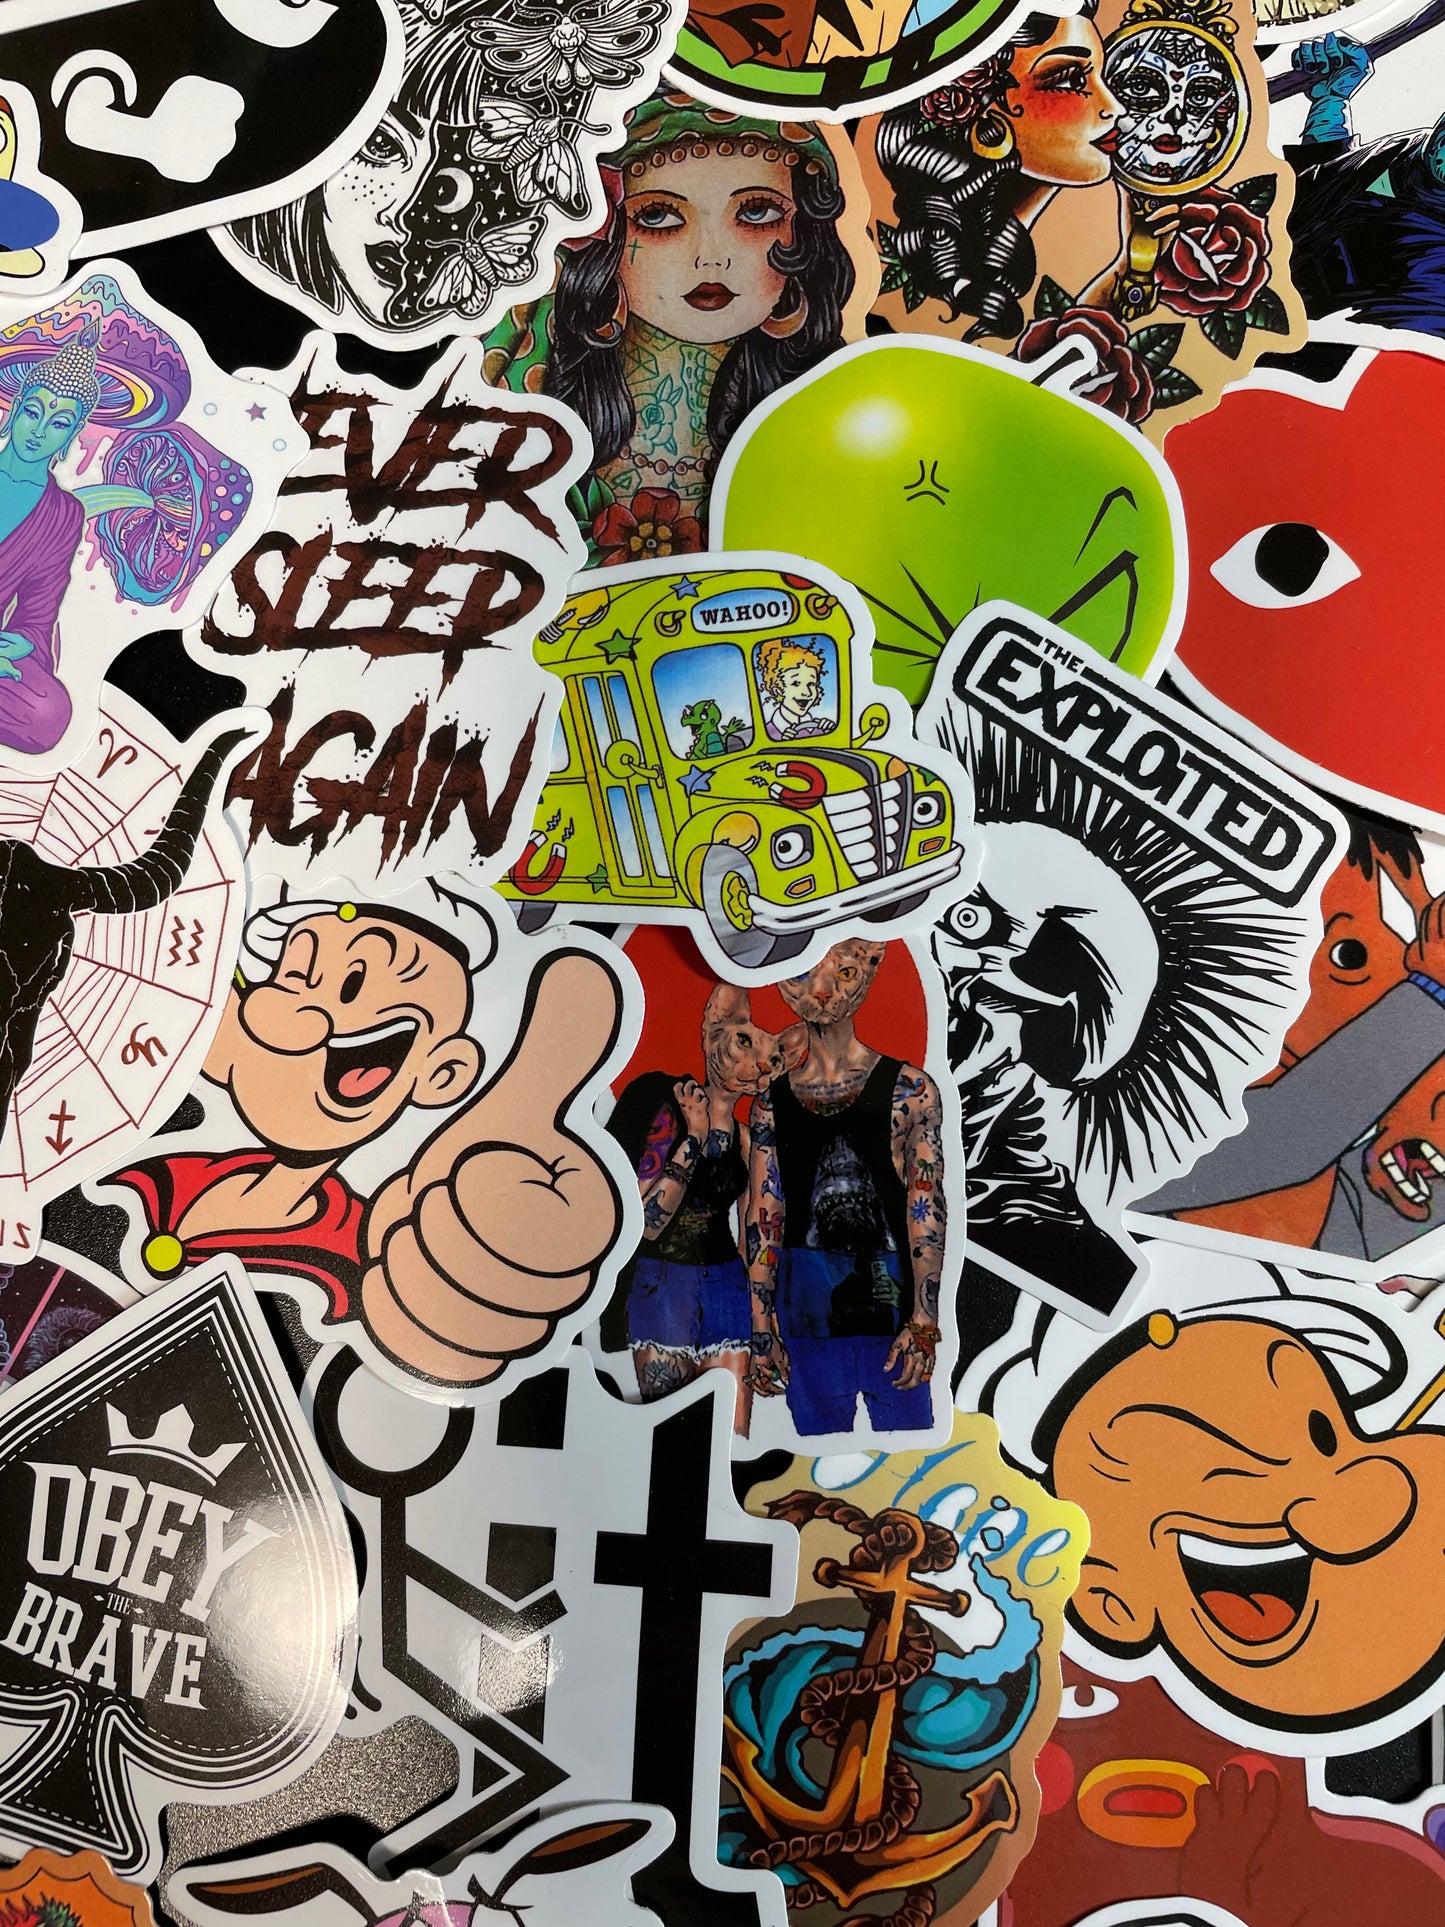 Pop Culture Stickers